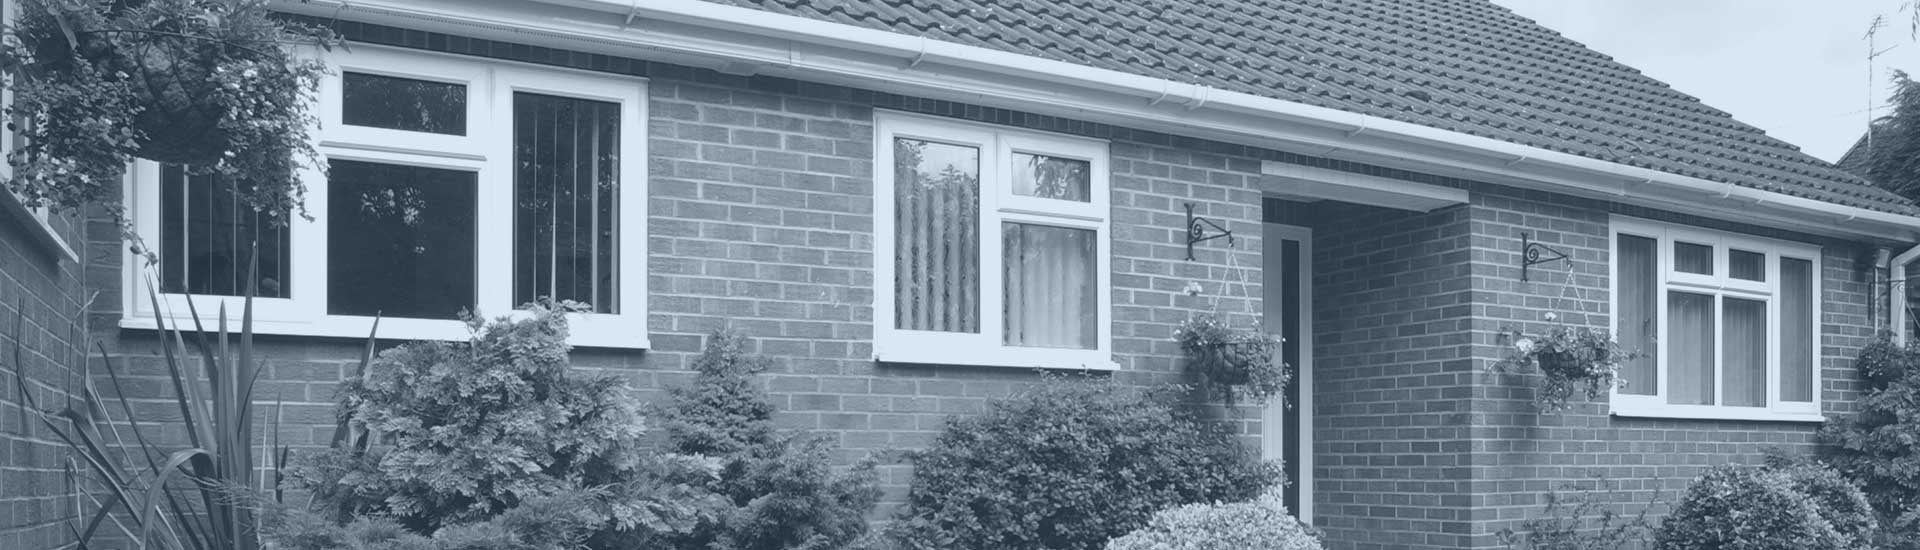 Energy efficient casement windows